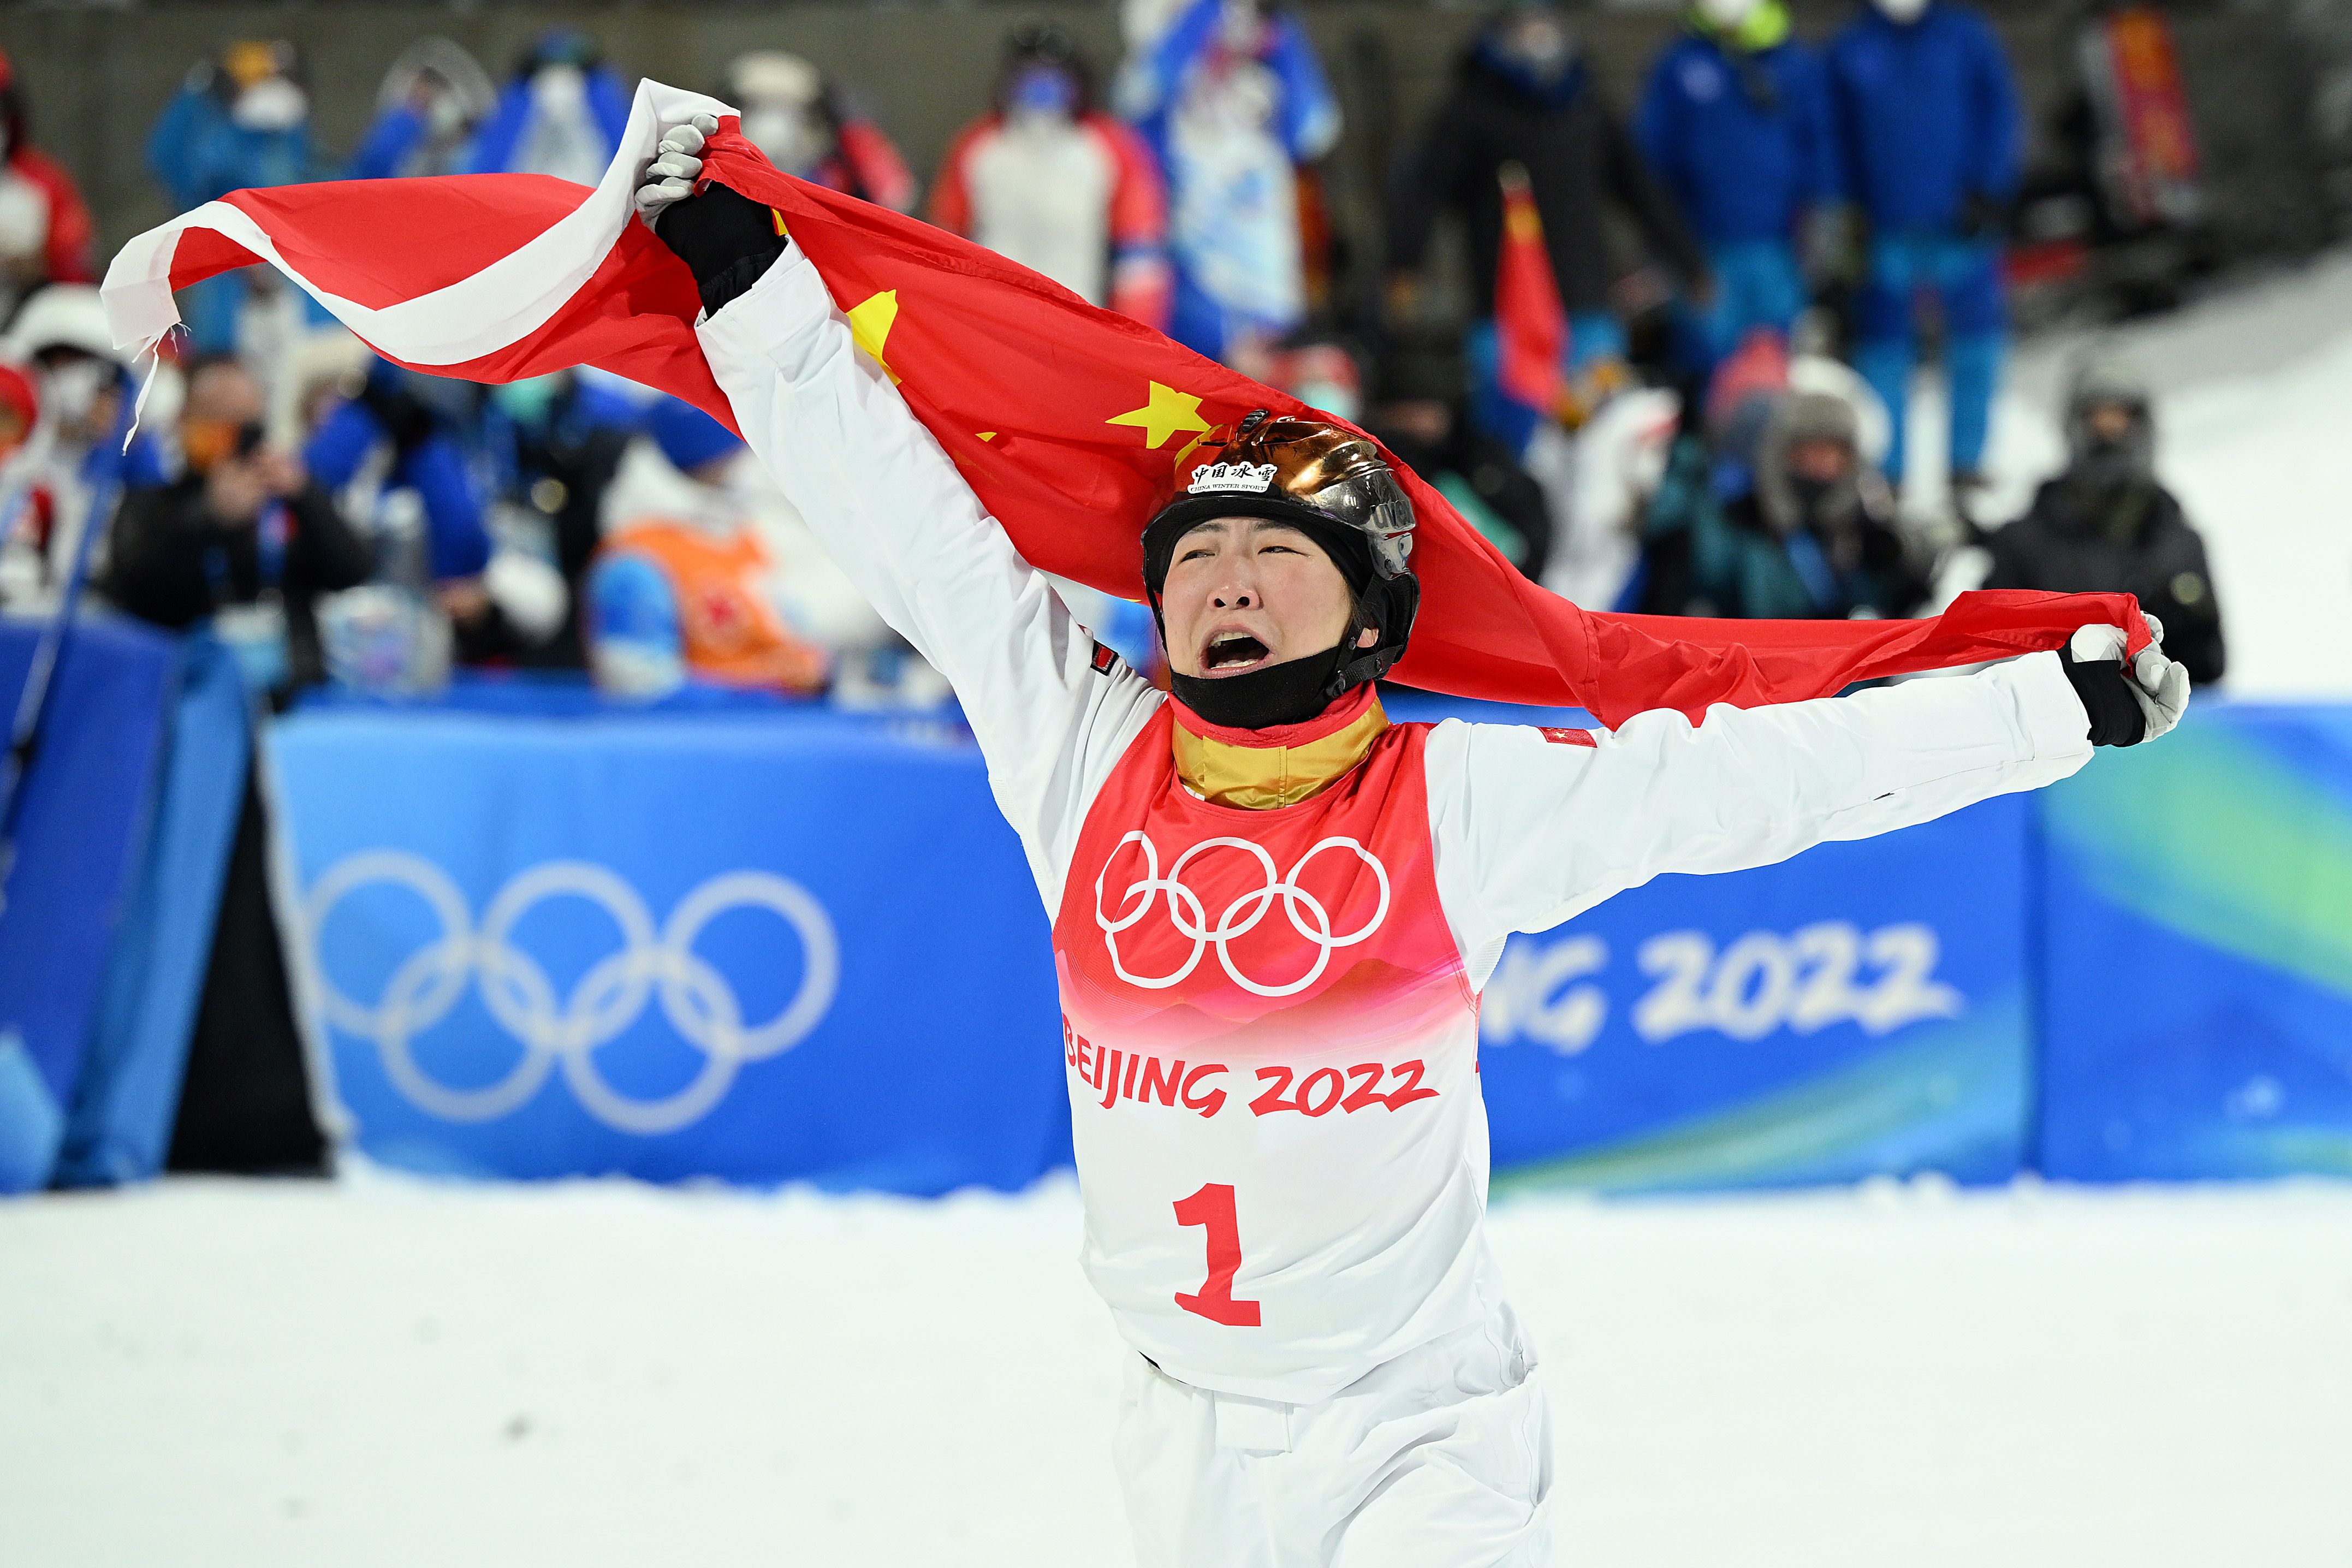 徐梦涛在 20 岁女子空中技巧中获得金牌22北京冬奥会